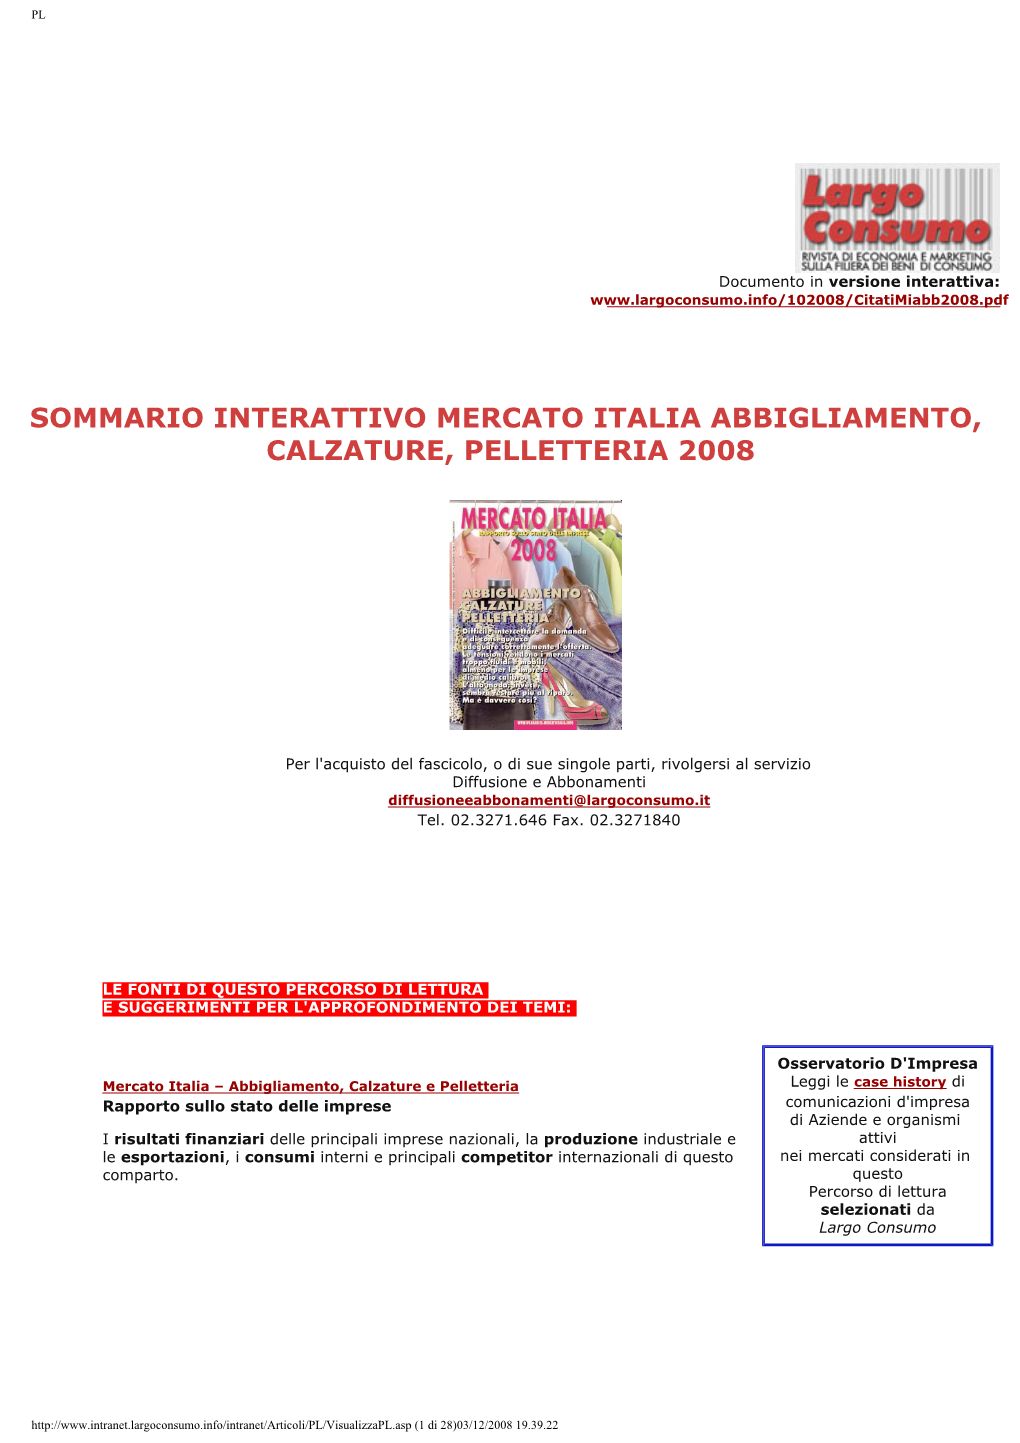 Sommario Interattivo Di Mercato Italia Abbigliamento, Calzature